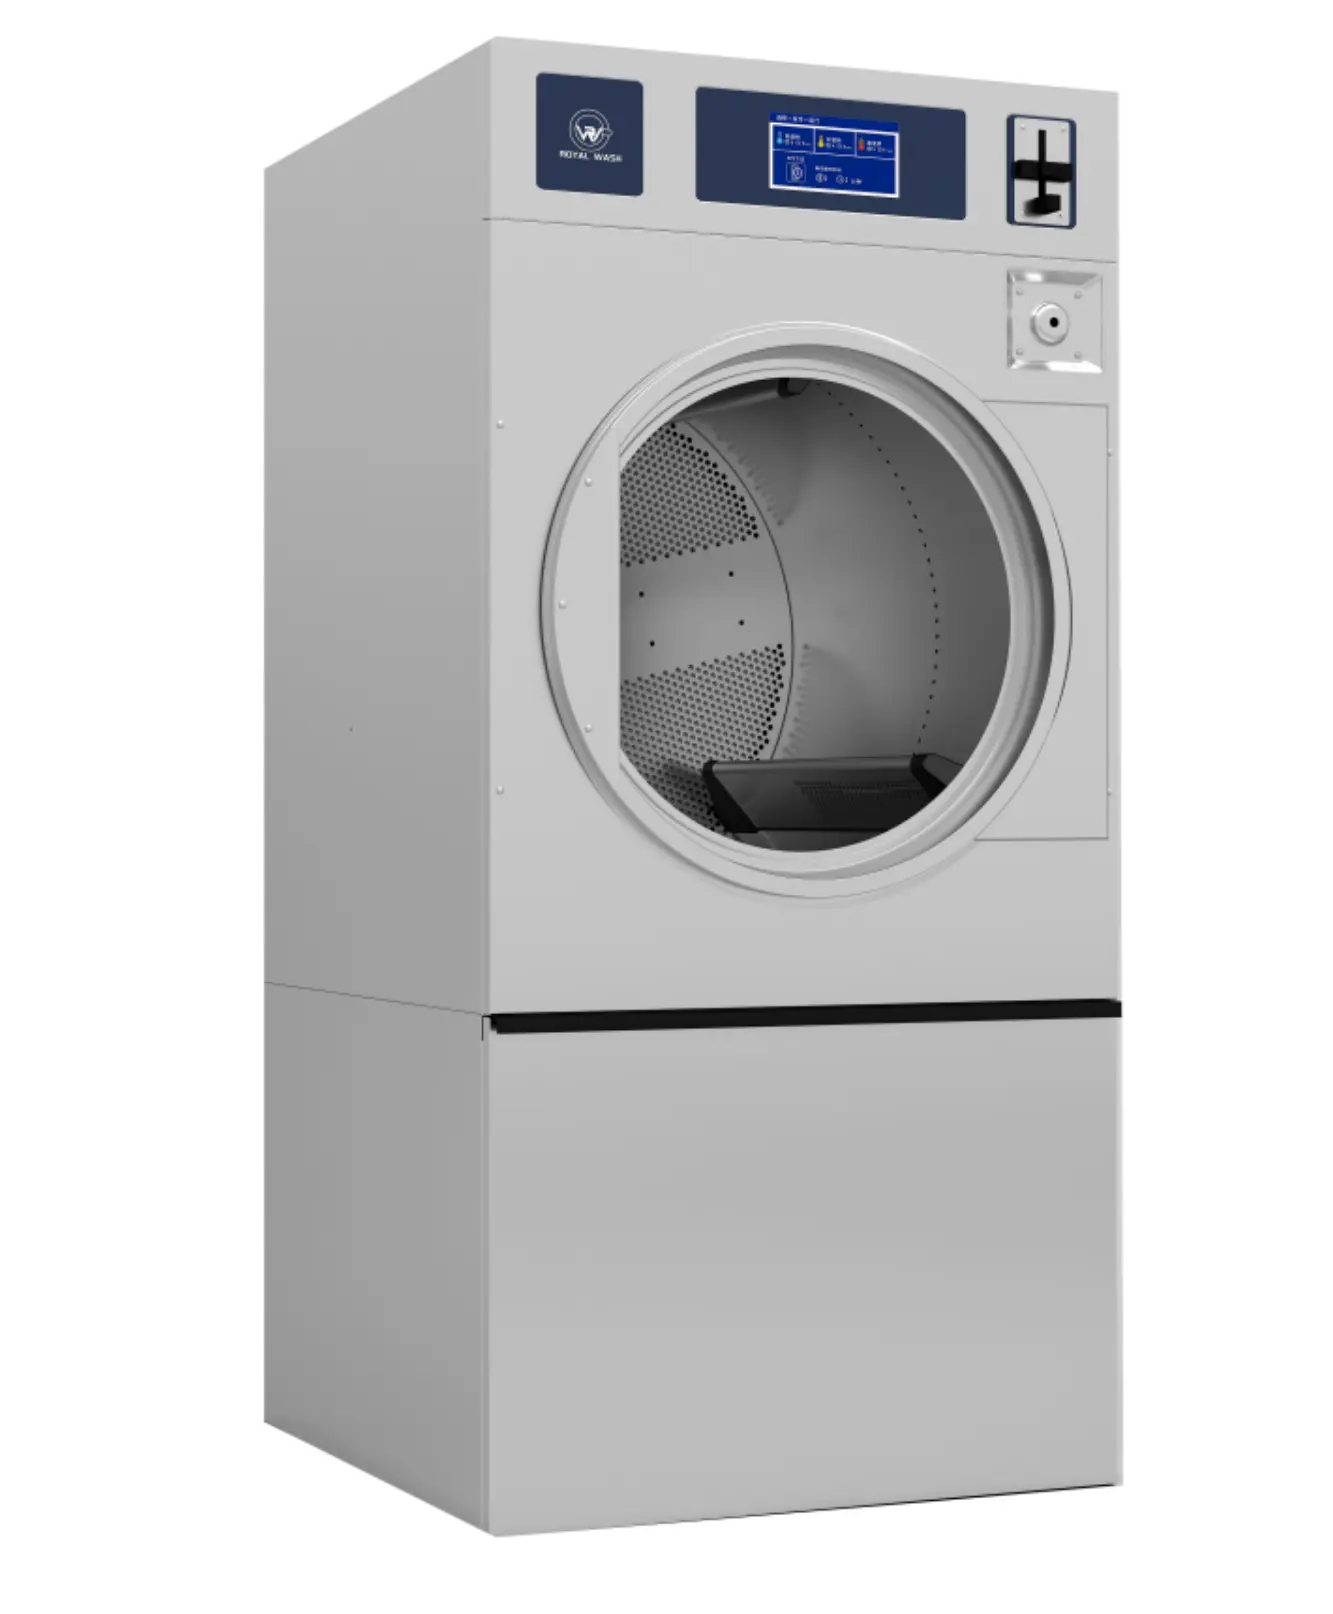 22kg वाणिज्यिक कपड़े धोने के उपकरण के लिए ऊर्जा की बचत बिजली गैस ड्रायर मशीन लॉन्ड्रोमैट ड्राई क्लीनिंग दुकान